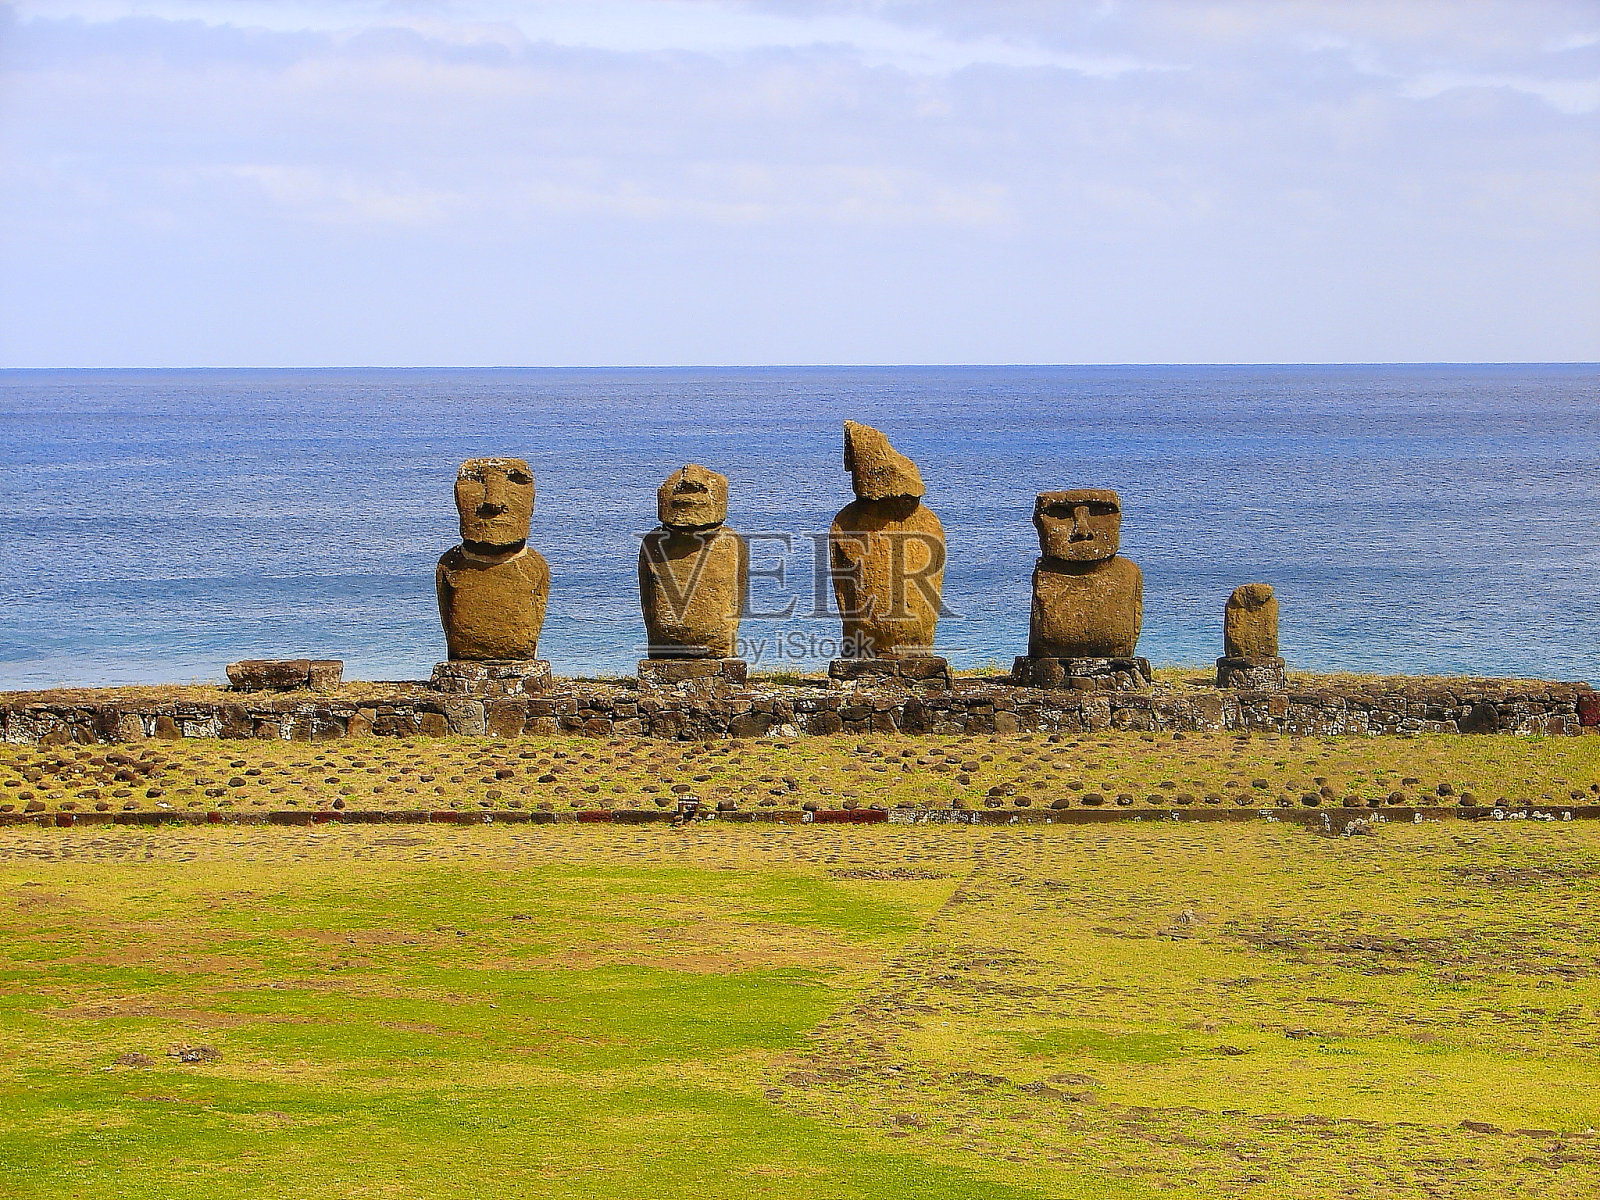 令人印象深刻的复活节岛-拉帕努伊古老文明-摩埃石像在田园诗般的乡村和太平洋海浪的海岸线海岸，戏剧性的景观全景-智利照片摄影图片